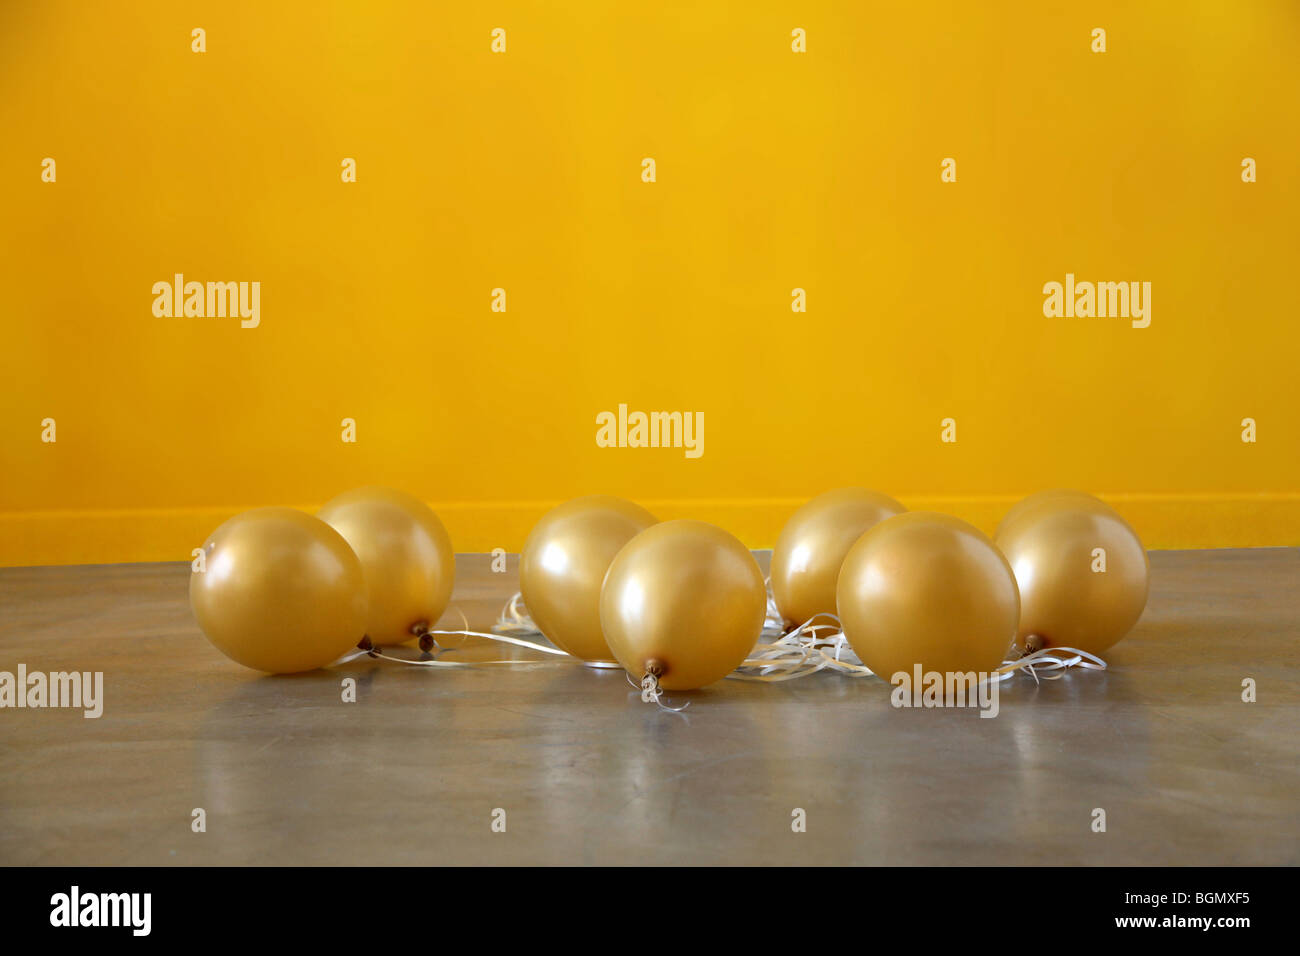 Les ballons d'or de lavabo pour la parole à l'issue de la partie dégonflé Banque D'Images